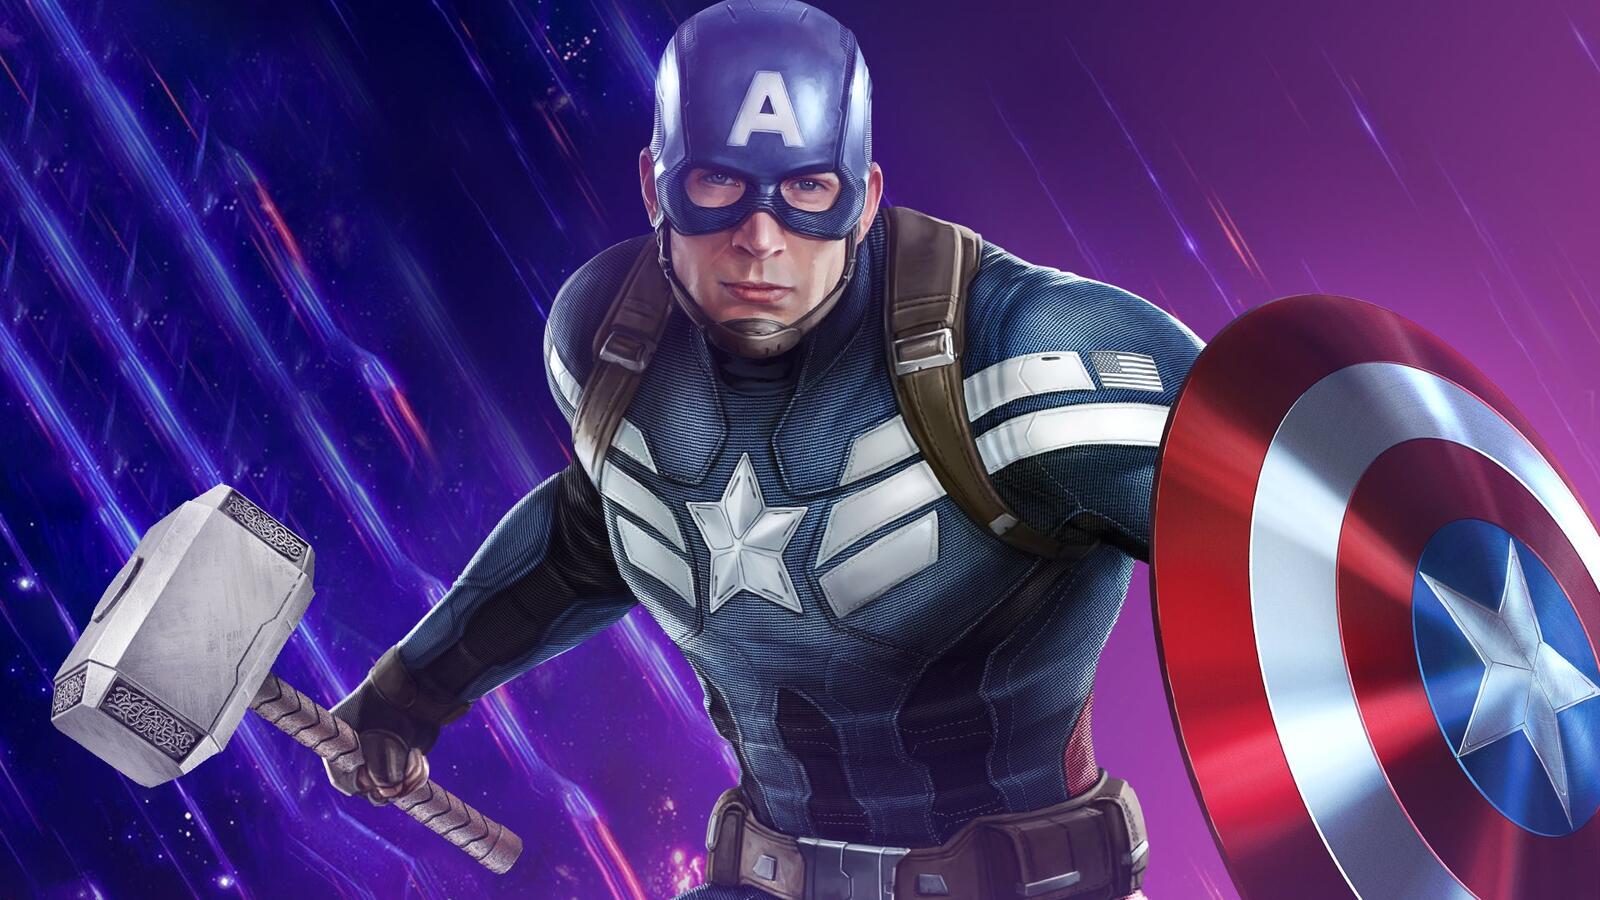 Бесплатное фото Капитан америка на фиолетовом фоне с молотом